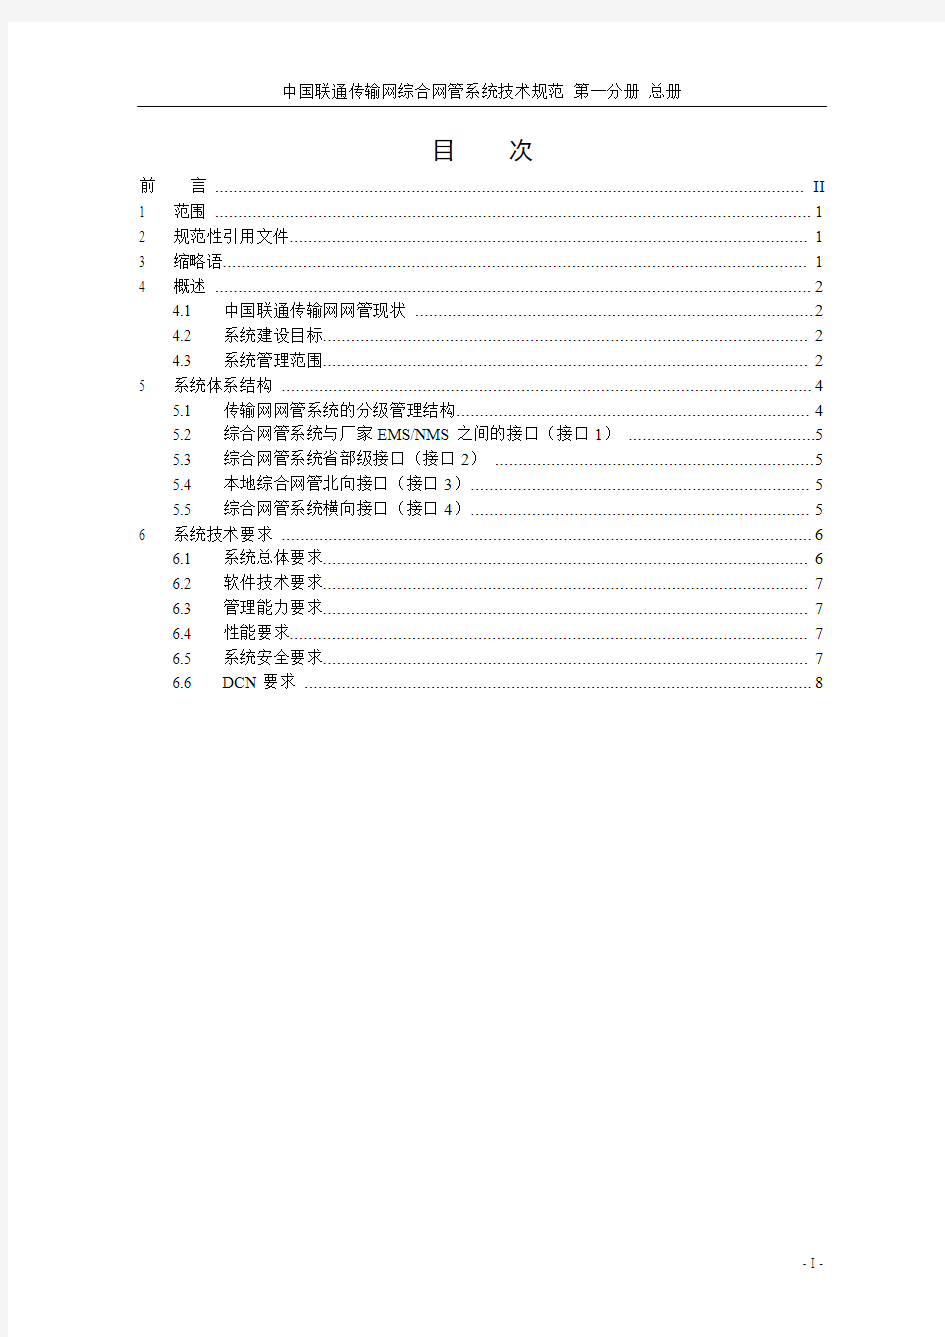 中国联通传输网综合网络管理系统技术规范-总册